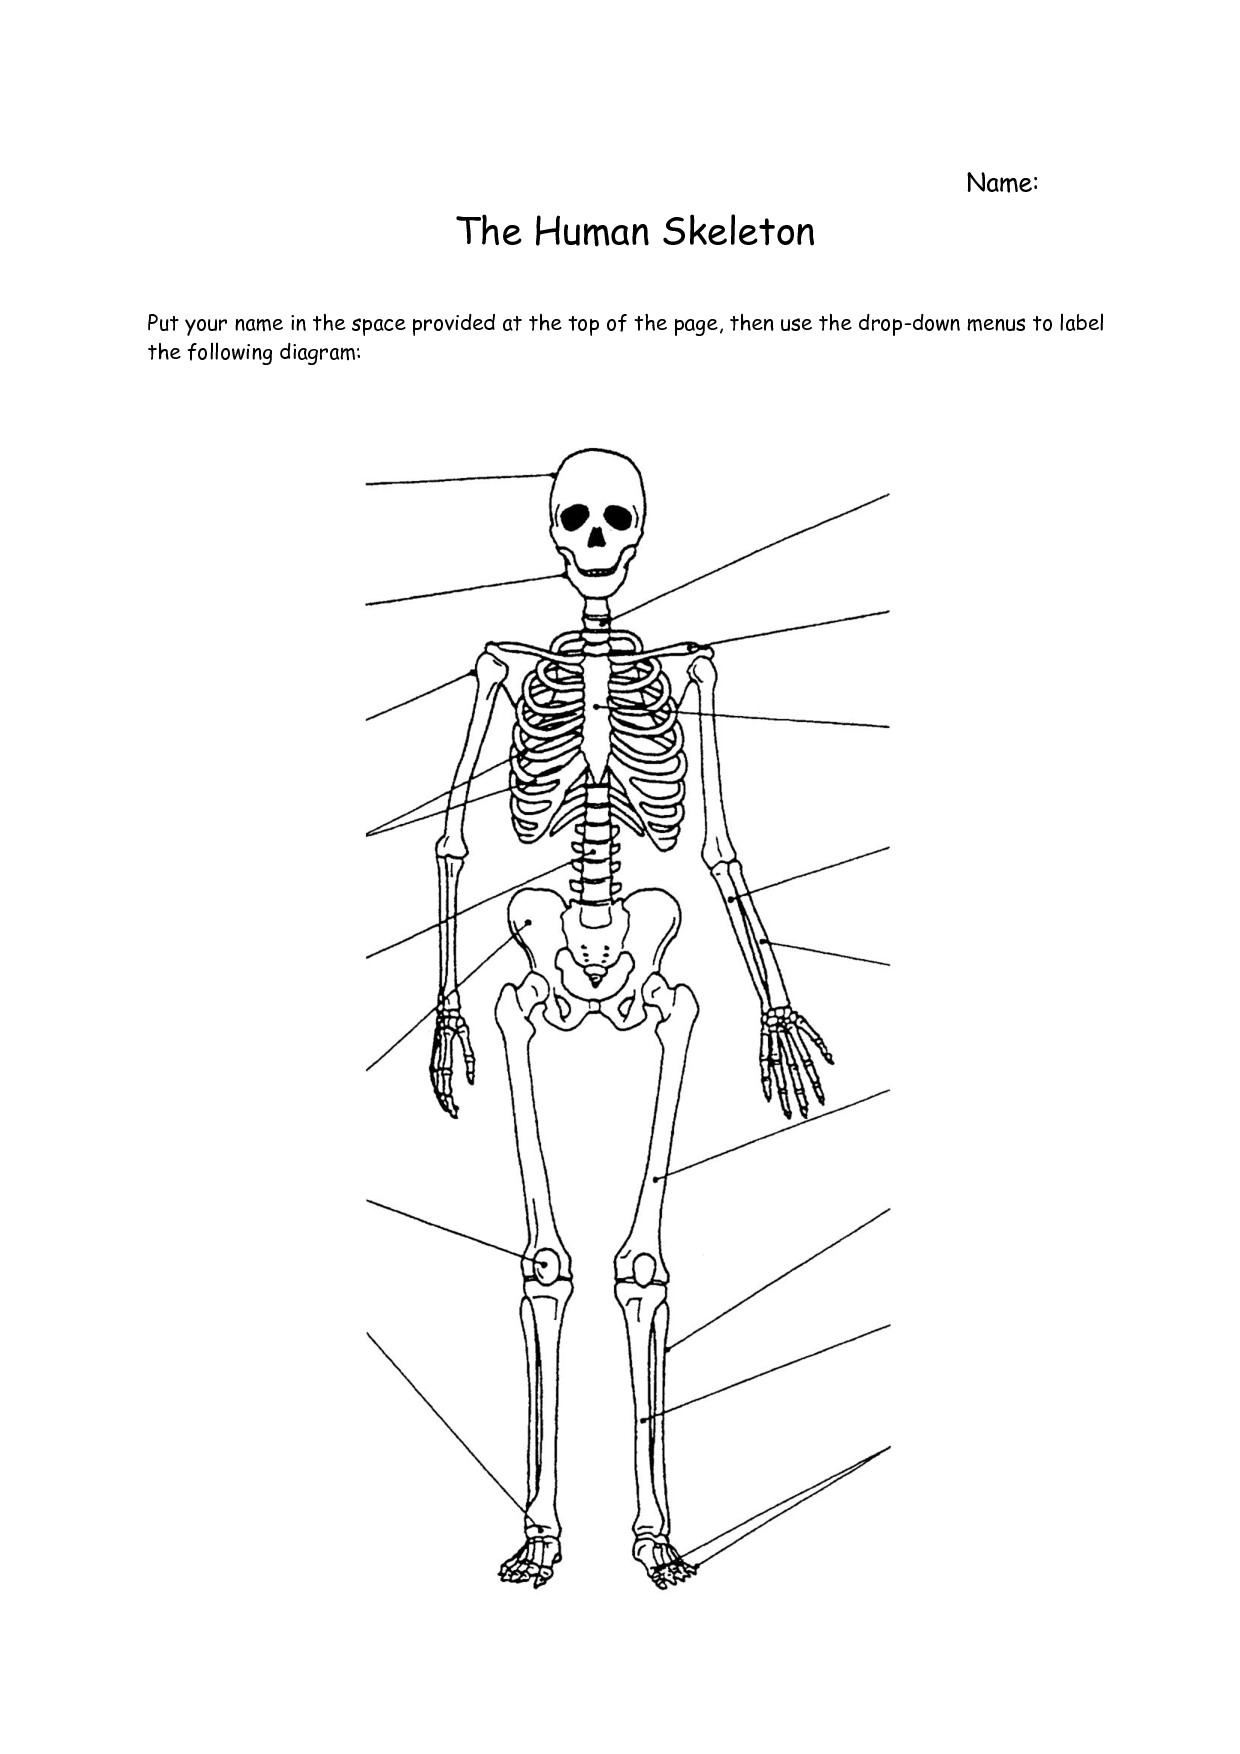 4 Best Images of Printable Bone Worksheets - Free Printable Human